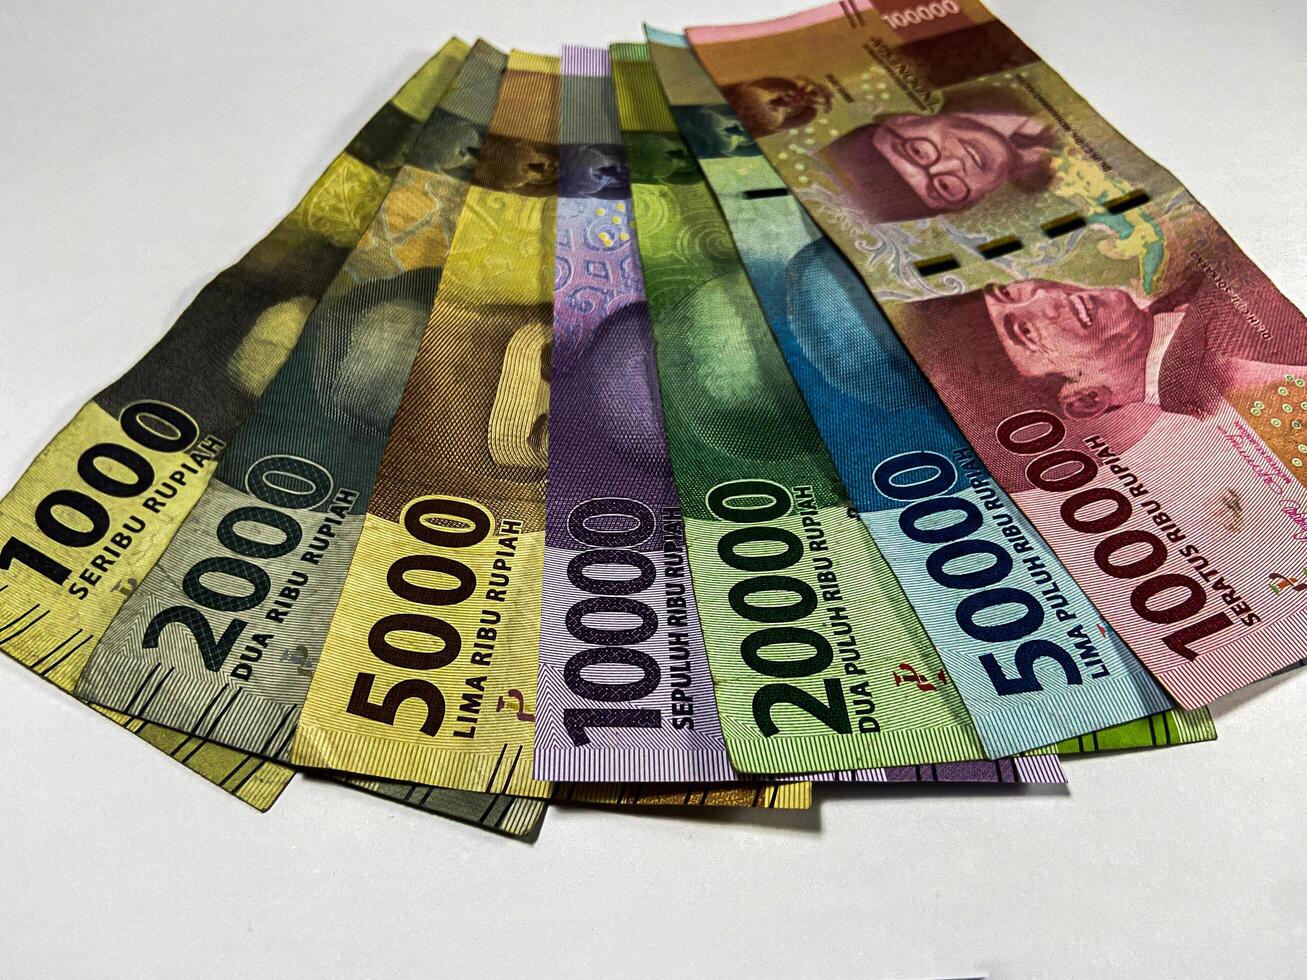 indonesio rupia colección de indonesio rupia billetes aislado en blanco antecedentes foto